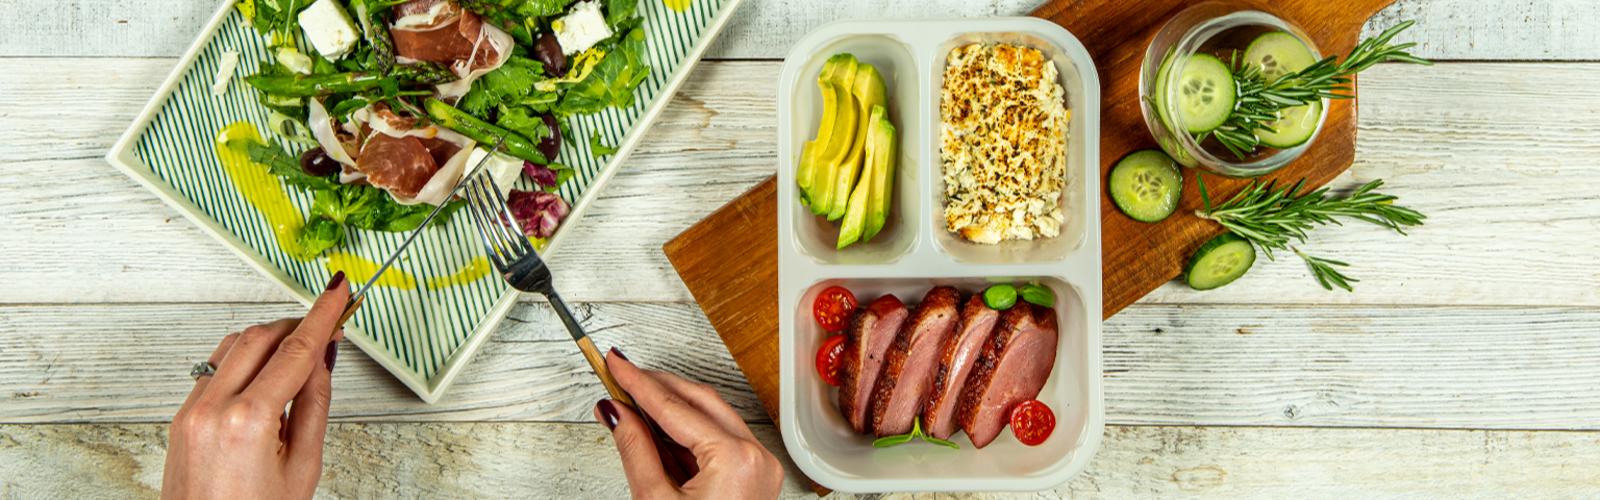 LifeBox: mâncare sănătoasă pentru un stil de viață sănătos